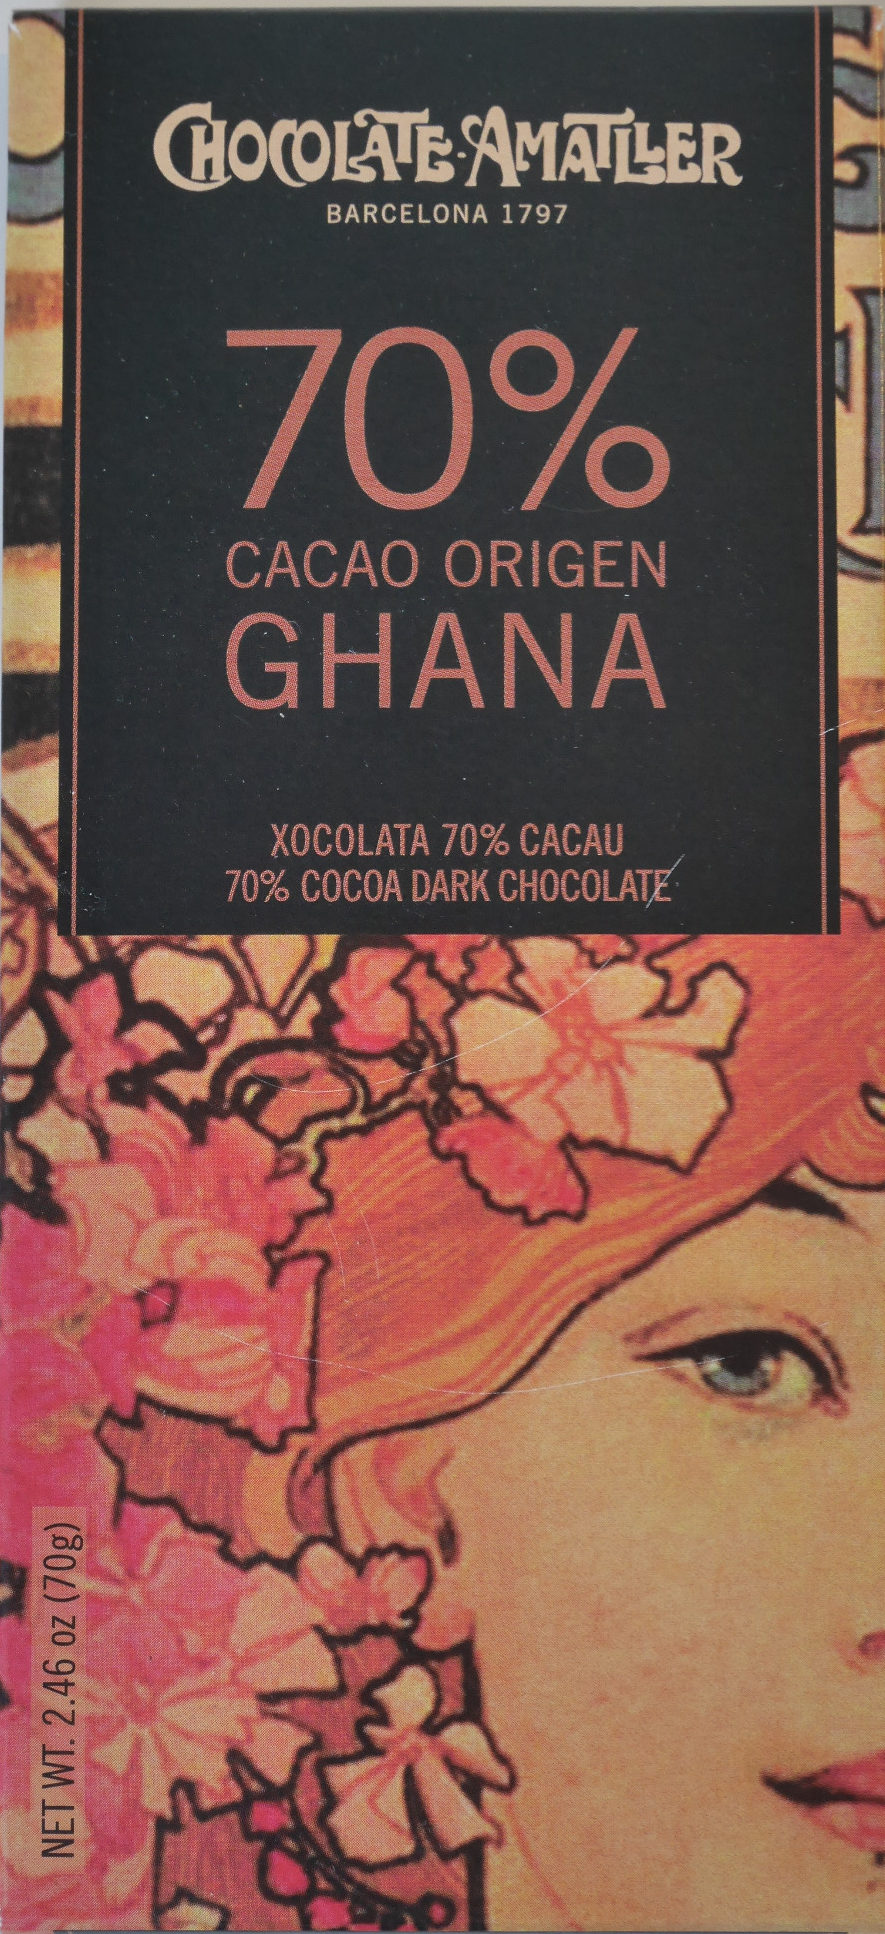 Chocolate 70% cacao origen Ghana - Product - en